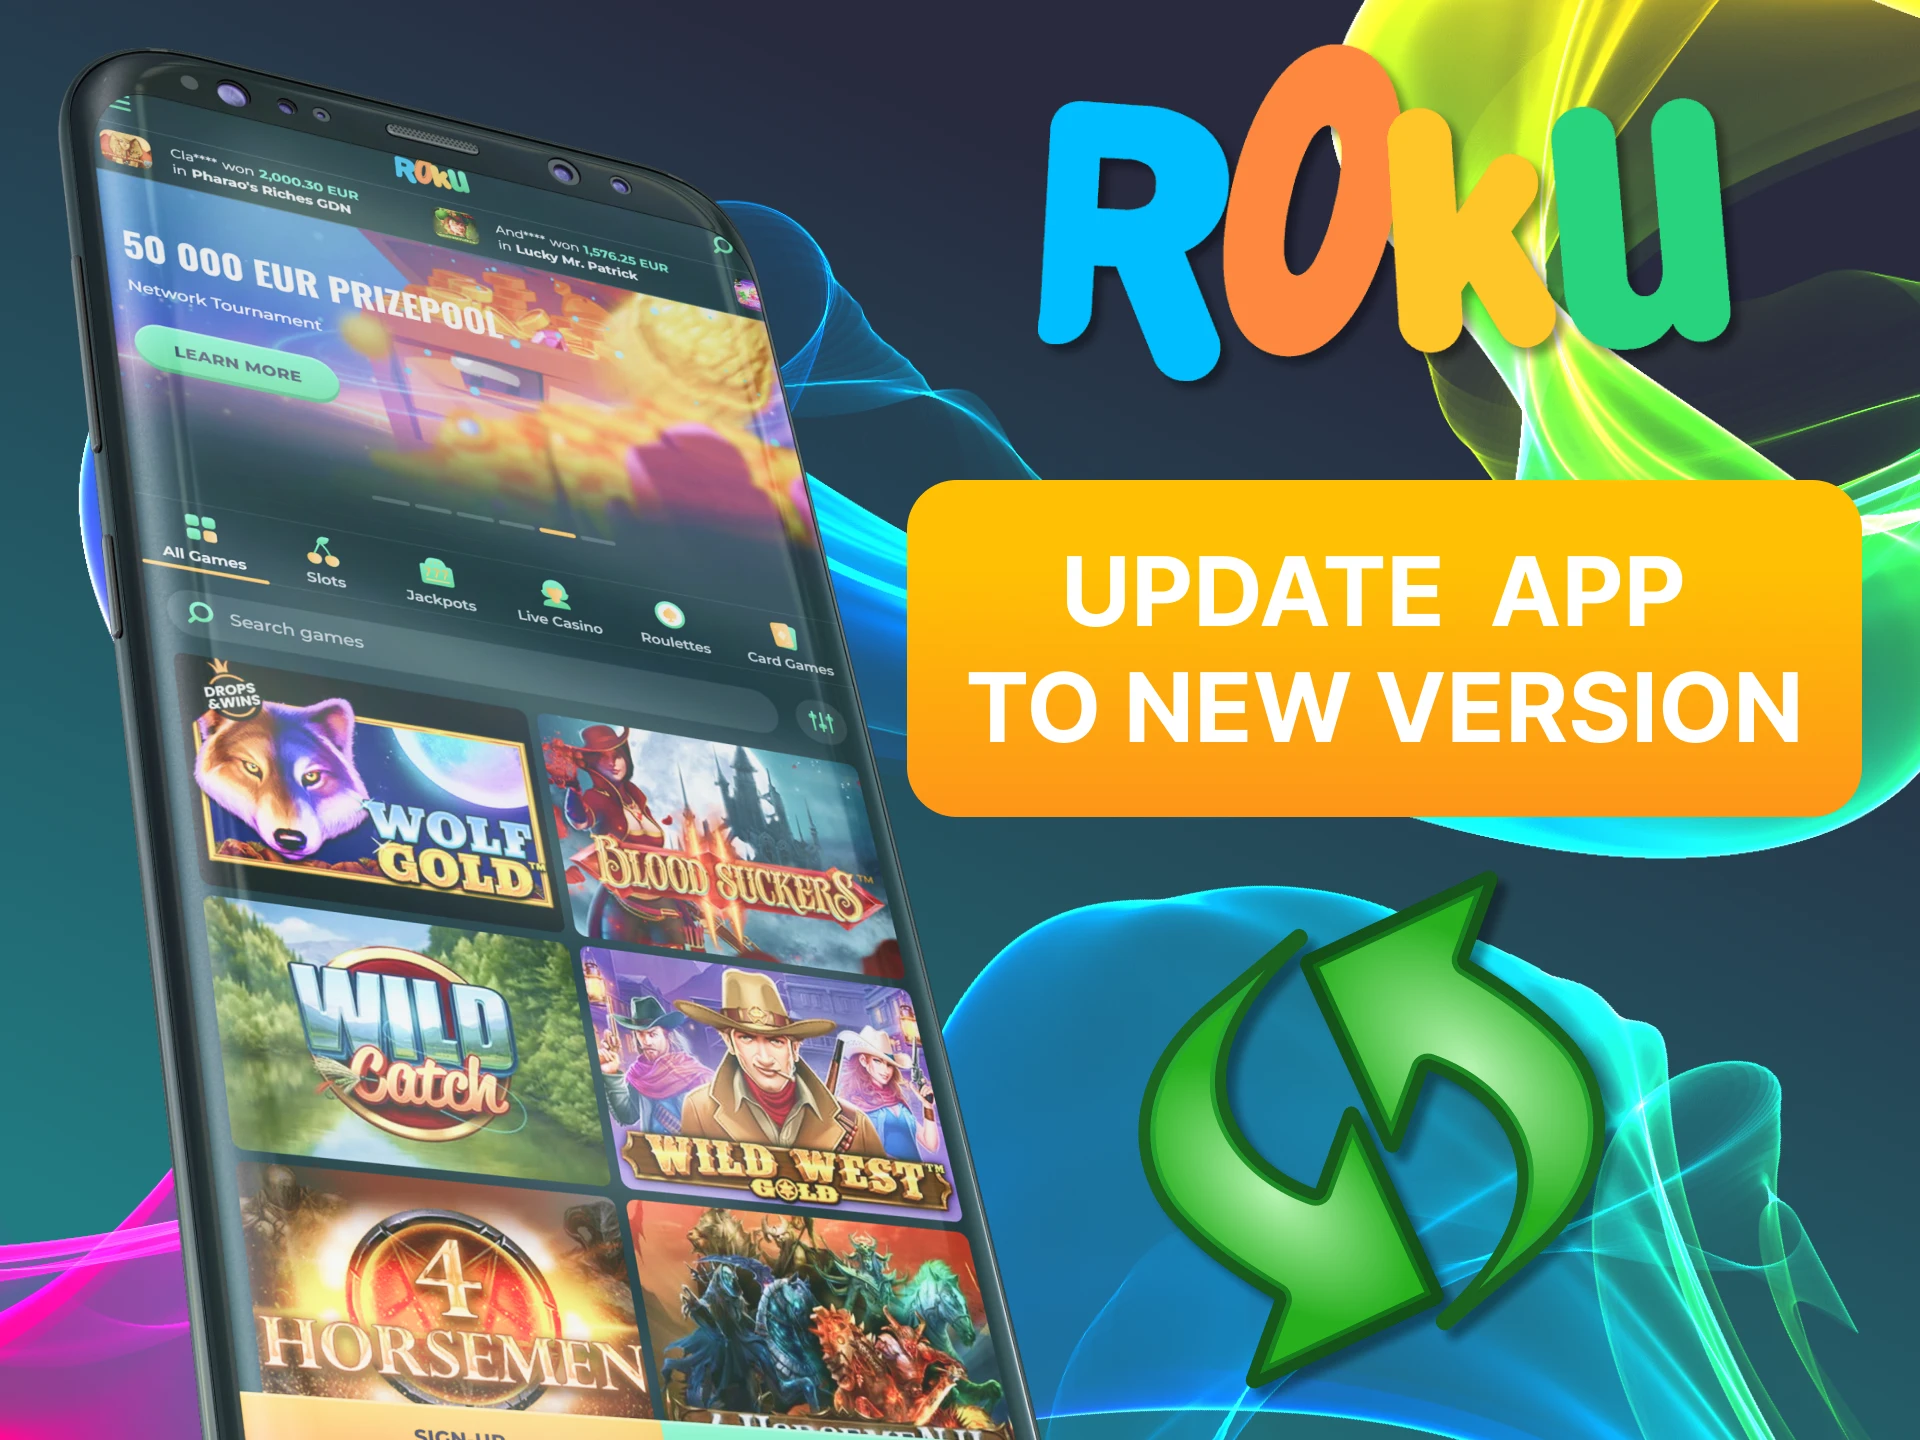 Update the Rokubet app.